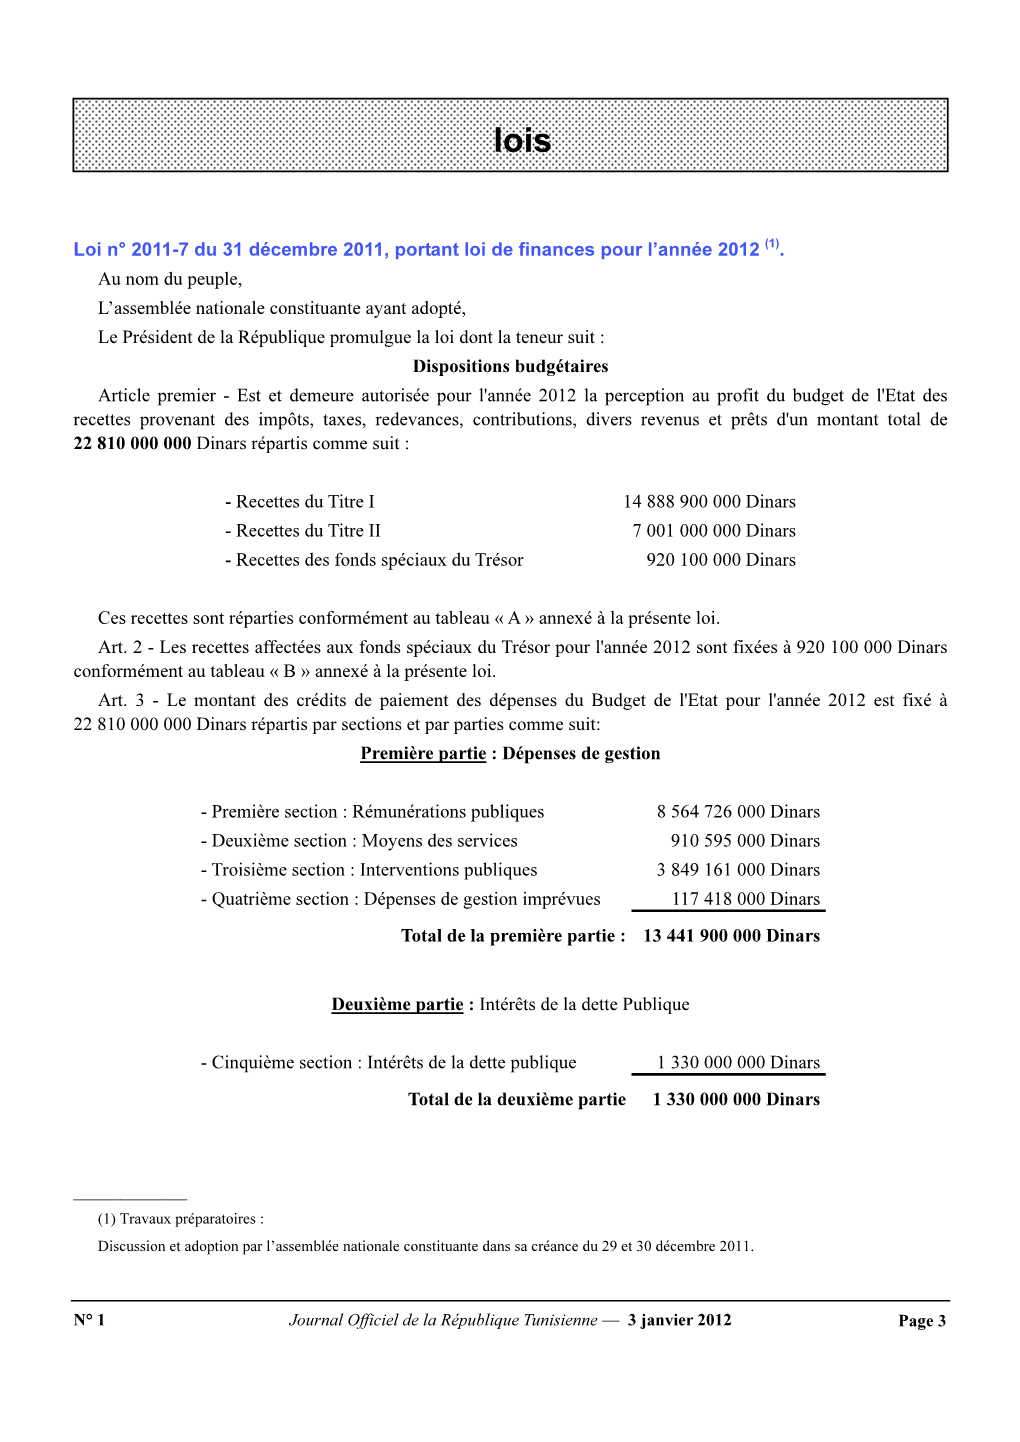 Loi De Finances Pour L'année 2012 Loi 2011-7